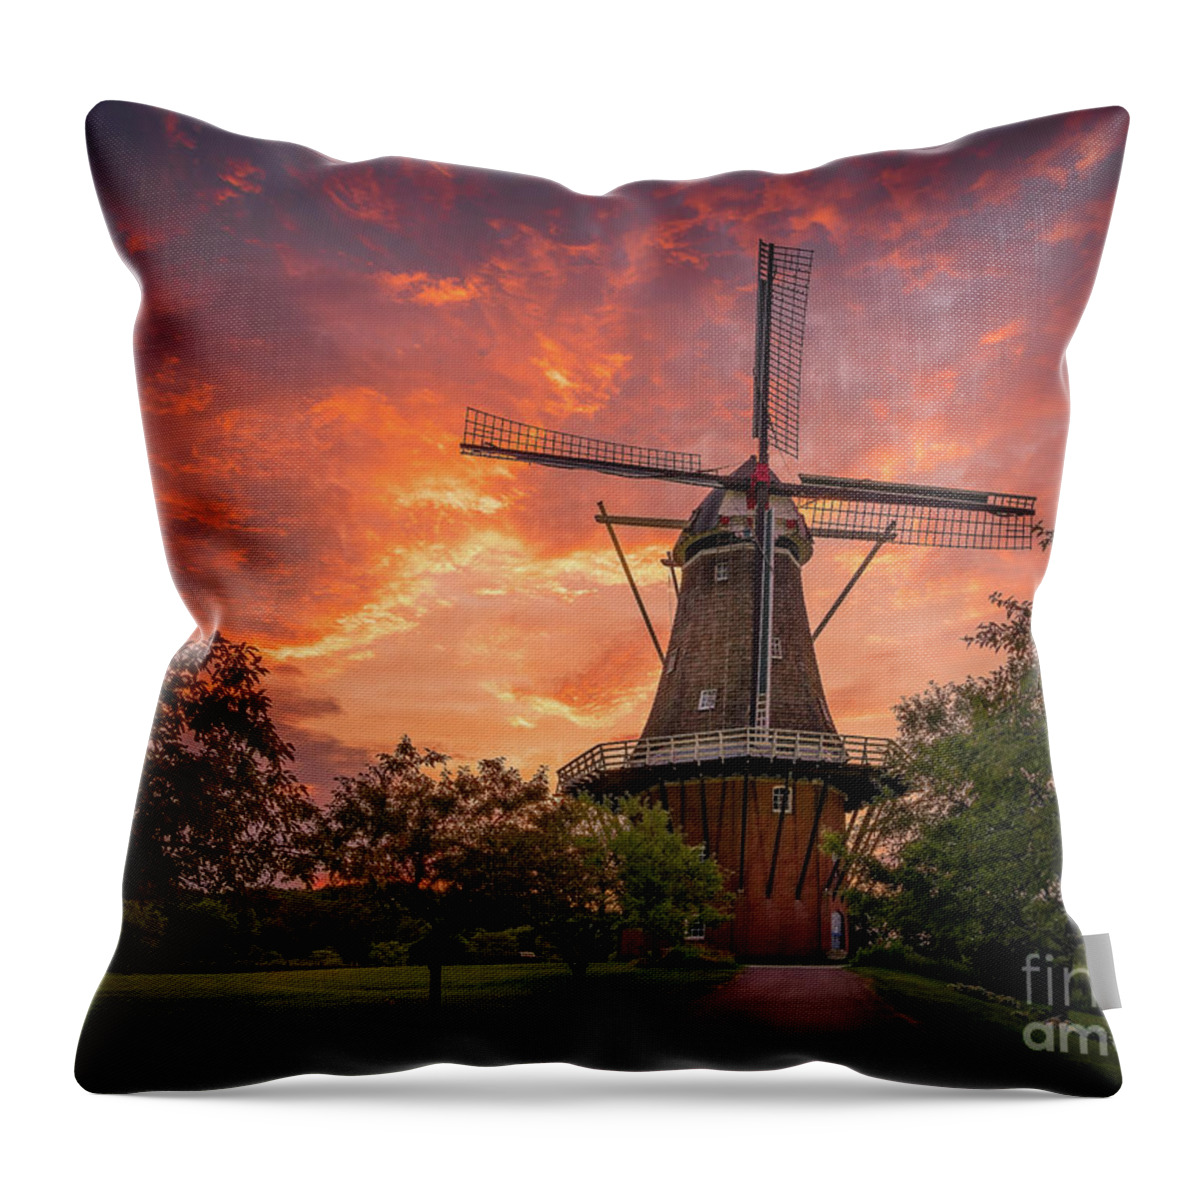 De Zwaan Throw Pillow featuring the photograph Windmill Sunrise, Holland, Michigan by Liesl Walsh